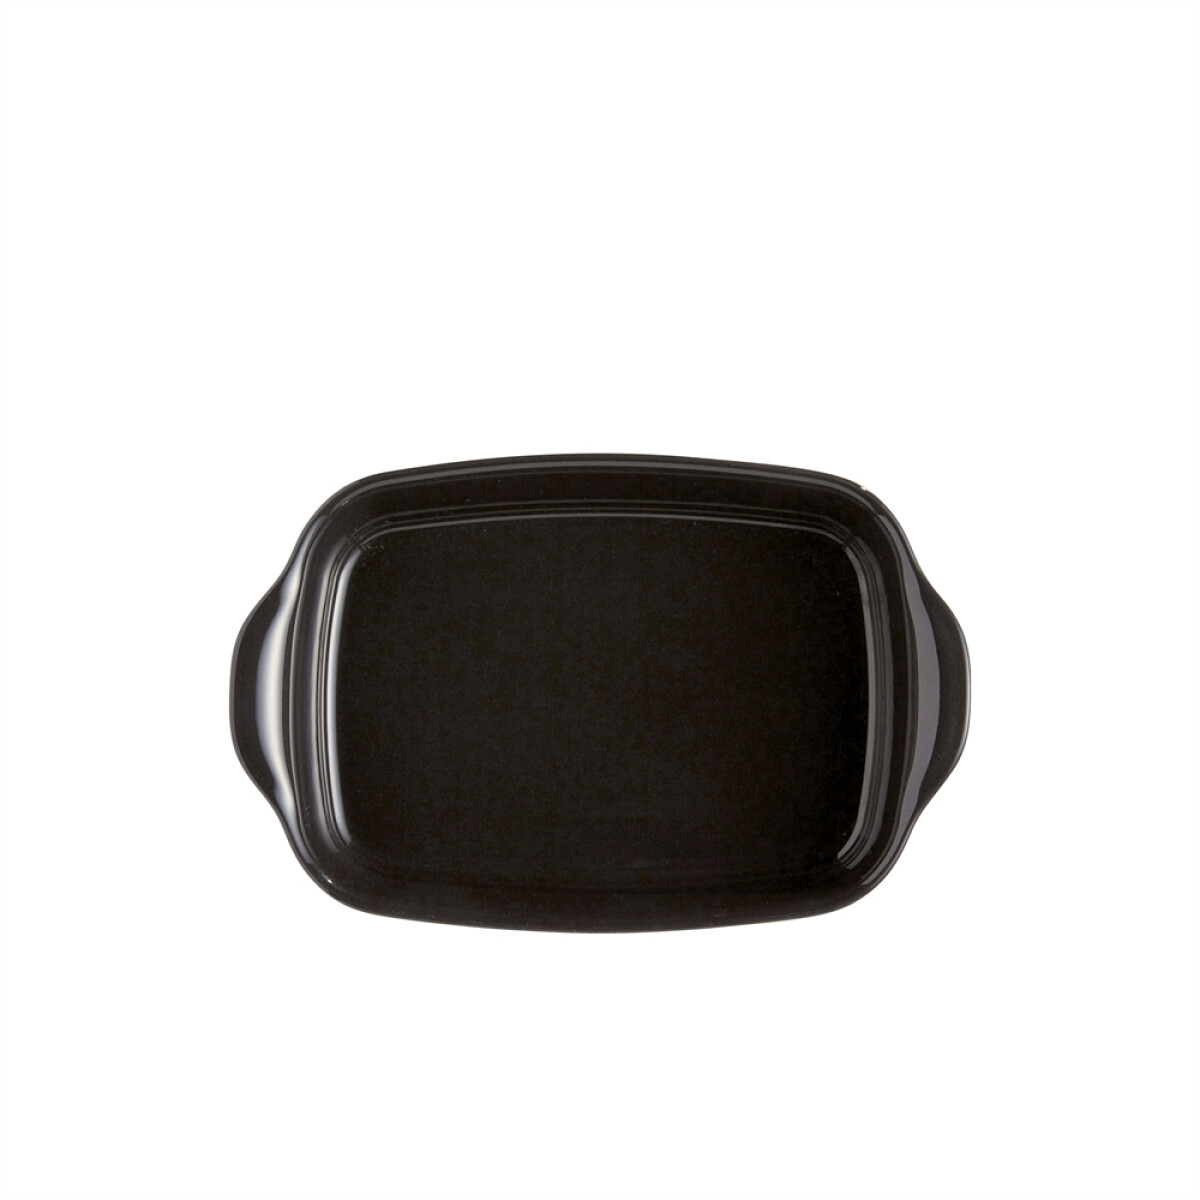 Керамична тава EMILE HENRY SMALL RECTANGULAR OVEN DISH - 30 х 19 см, цвят черен